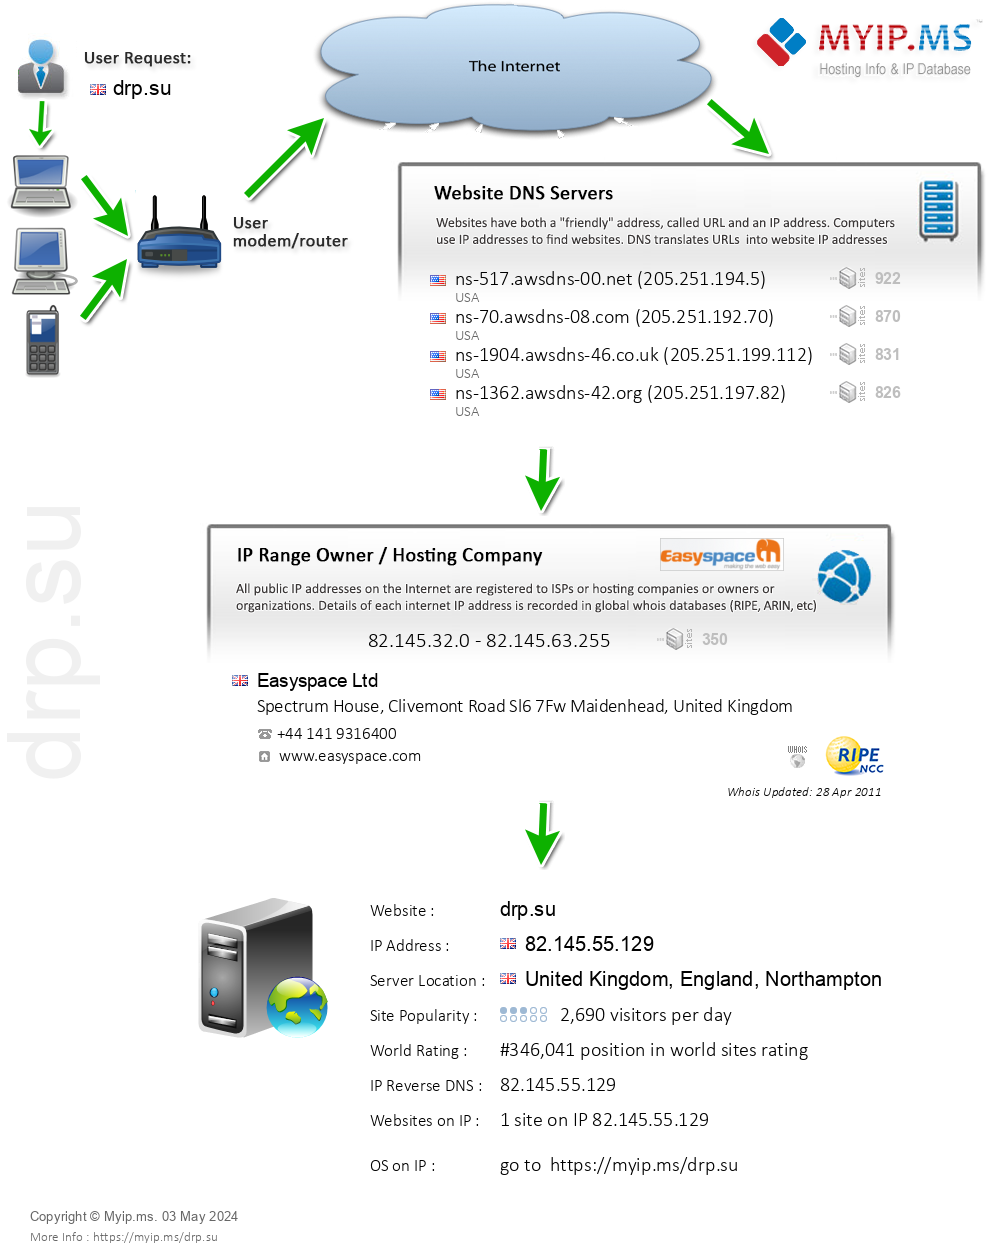 Drp.su - Website Hosting Visual IP Diagram